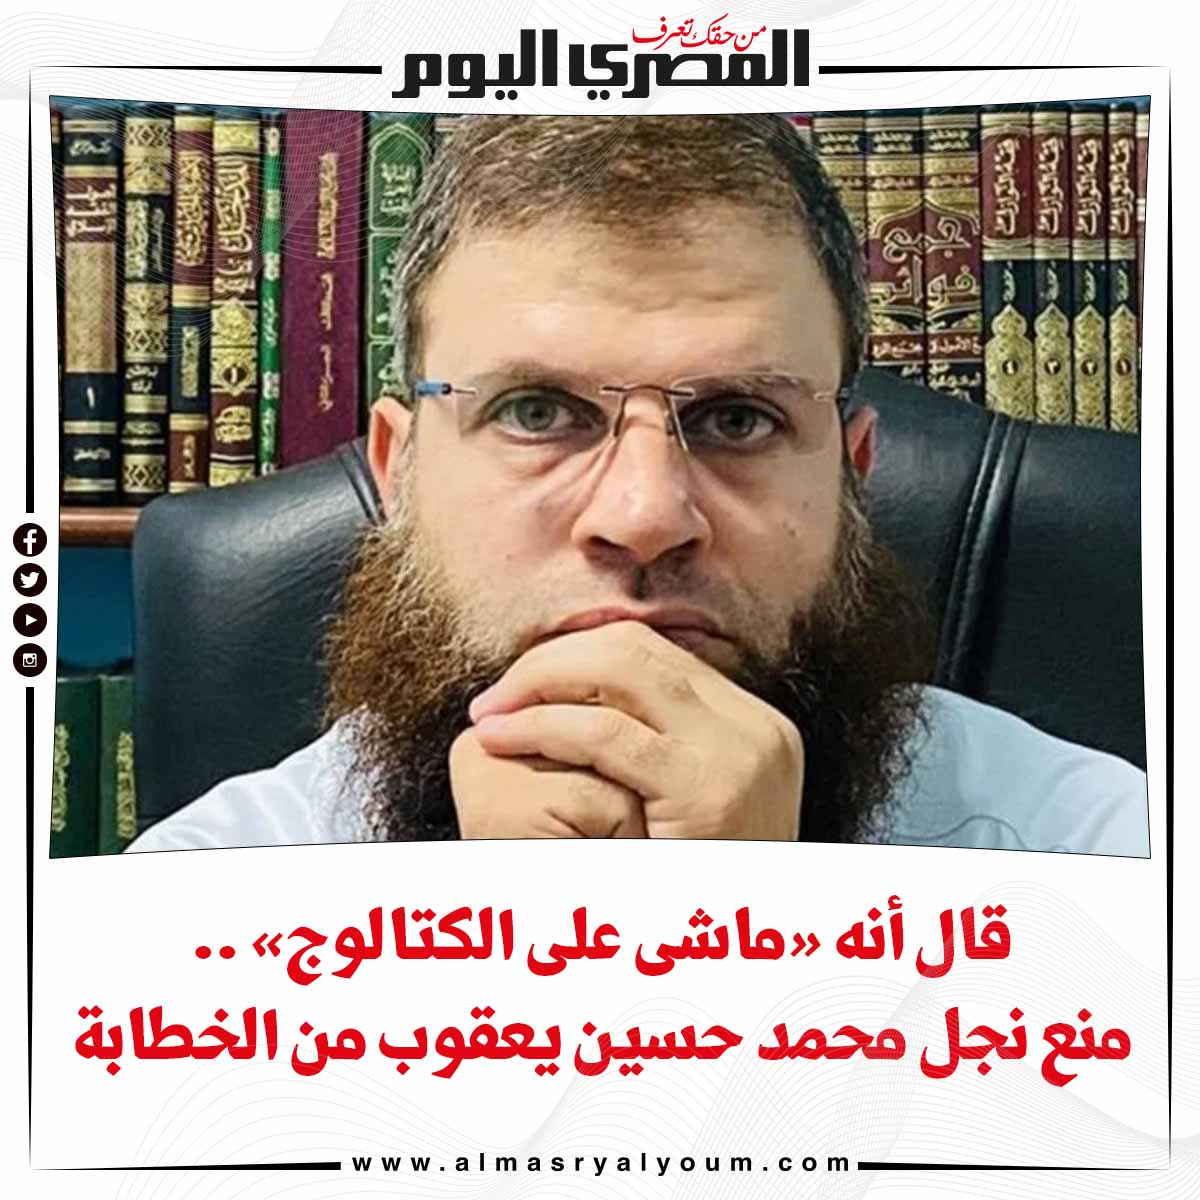 قال أنه «ماشى على الكتالوج» .. منع نجل محمد حسين يعقوب من الخطابة